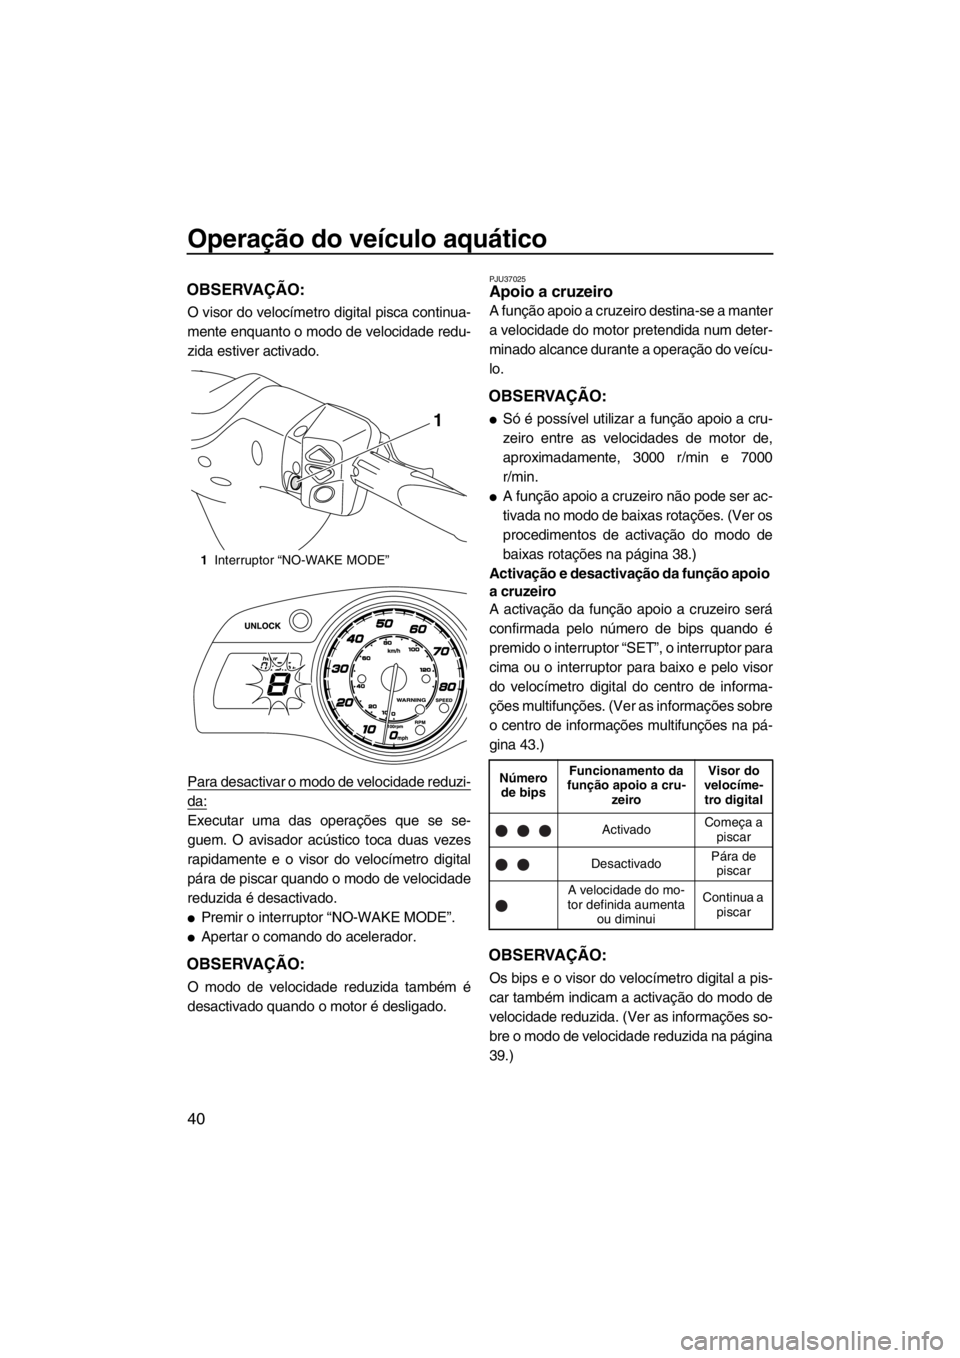 YAMAHA FX SHO 2012  Manual de utilização (in Portuguese) Operação do veículo aquático
40
OBSERVAÇÃO:
O visor do velocímetro digital pisca continua-
mente enquanto o modo de velocidade redu-
zida estiver activado.
Para desactivar o modo de velocidade 